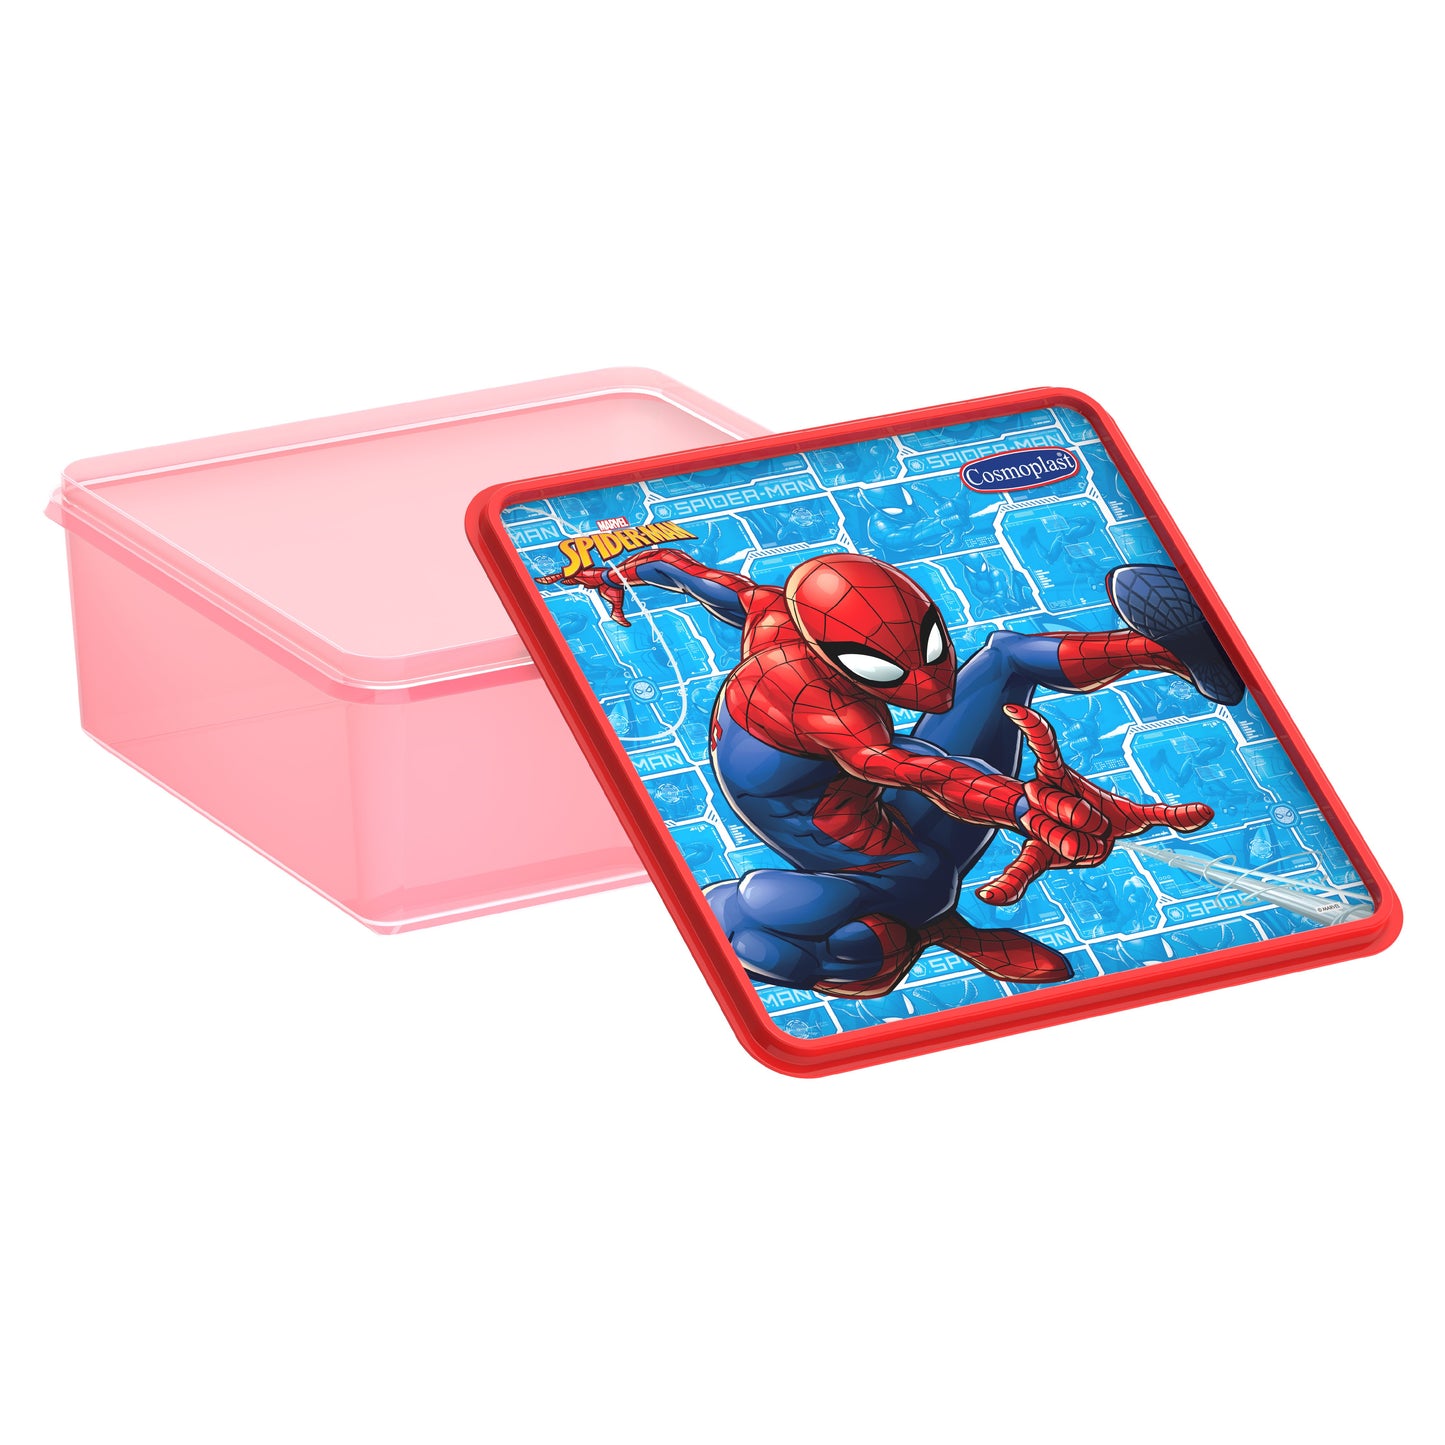 Cosmoplast Disney Marvel Spider Man Storage Box 8 Liters